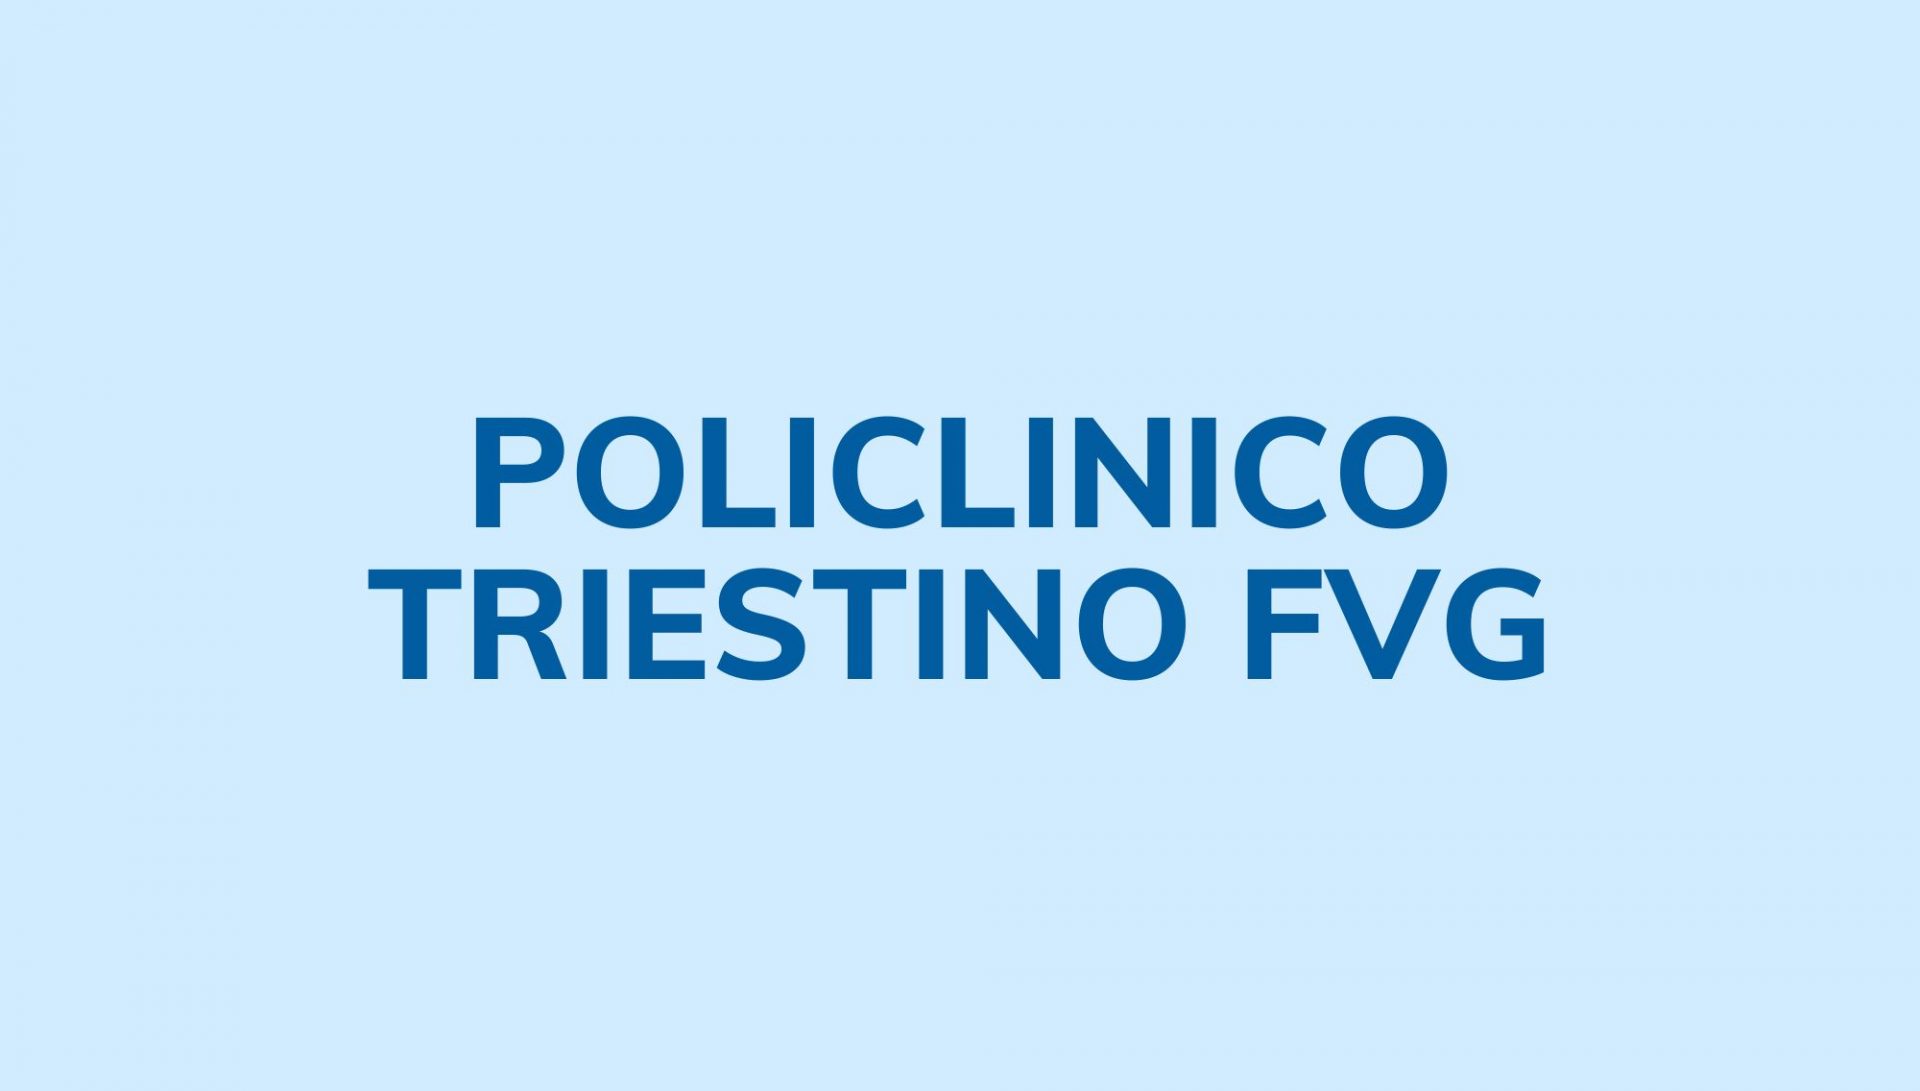 Policlinico Triestino FVG